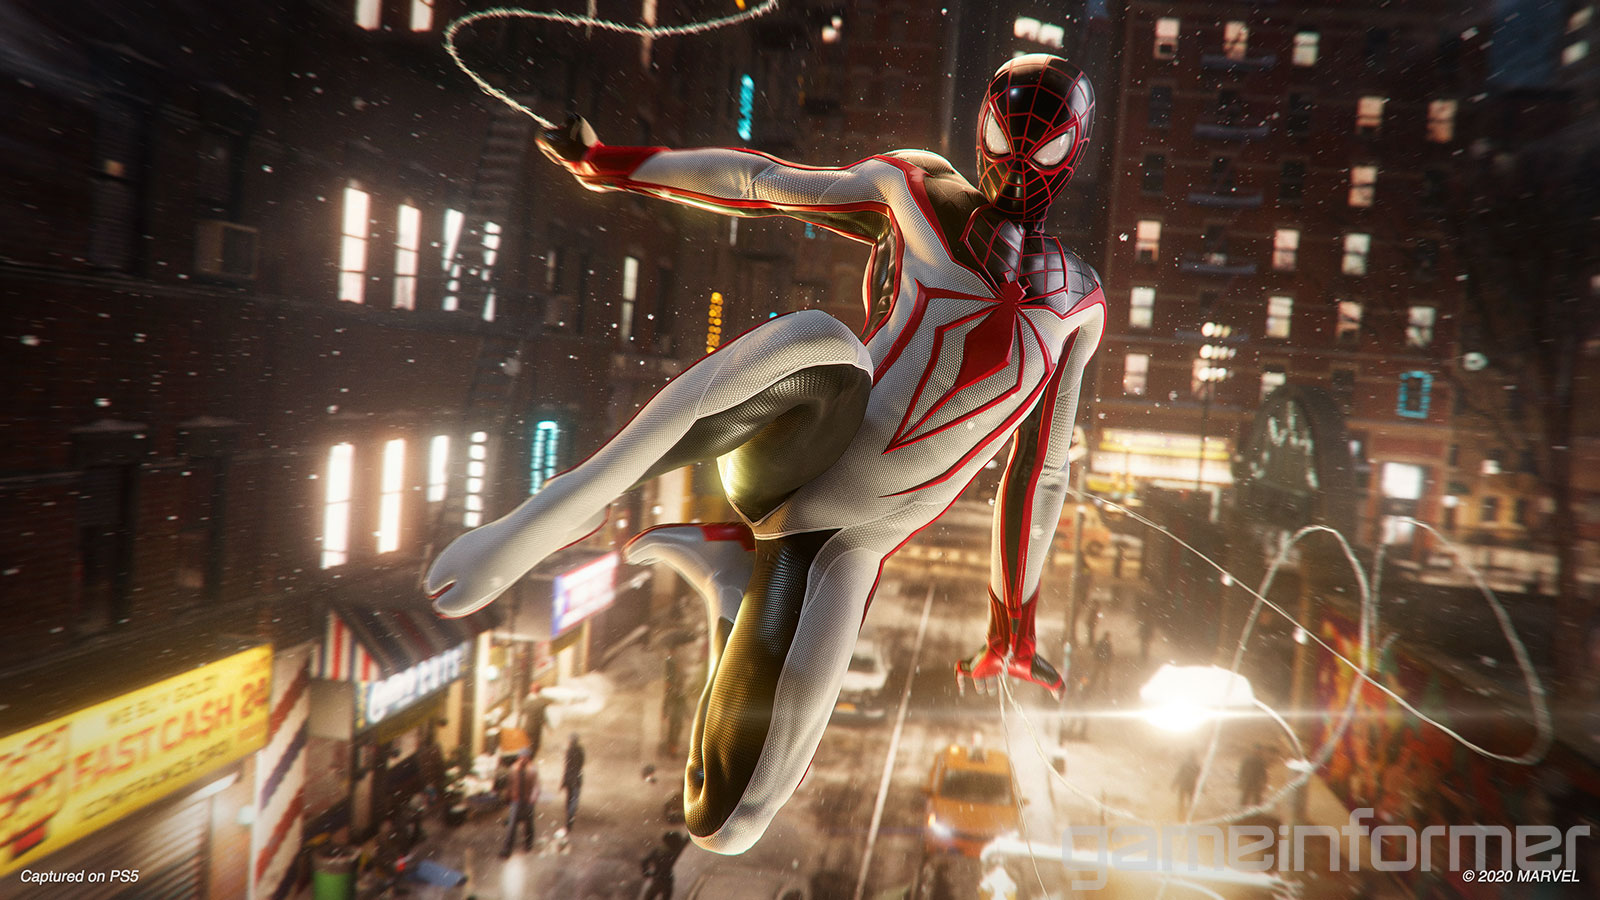 Spider-Man Miles Morales chắc chắn sẽ đem lại những giây phút giải trí tuyệt vời cho bạn. Với khả năng leo trèo, nhảy cầu và ném rắn, chàng siêu anh hùng này sẽ khiến bạn ngỡ ngàng. Hãy khám phá thế giới mãn nhãn này ngay bây giờ!